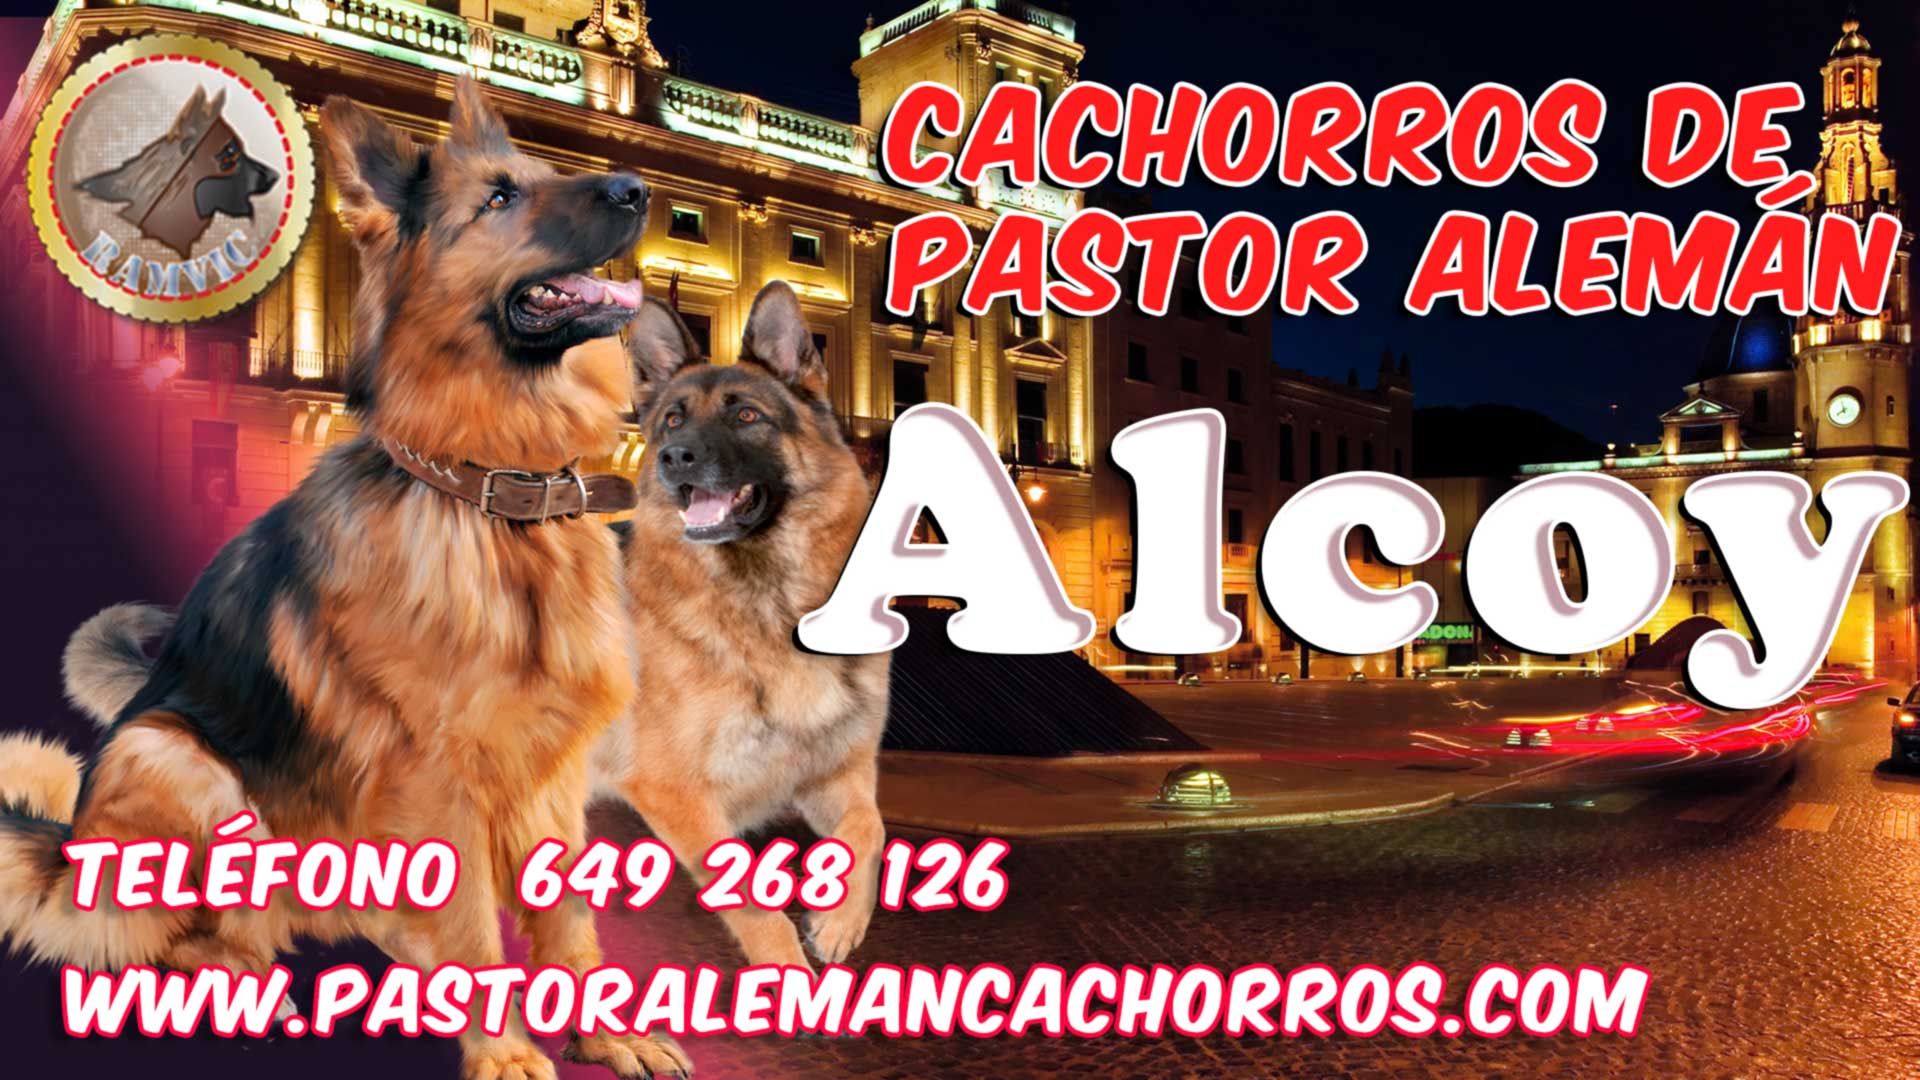 Comprar cachorros de Pastor Alemán en Alcoy